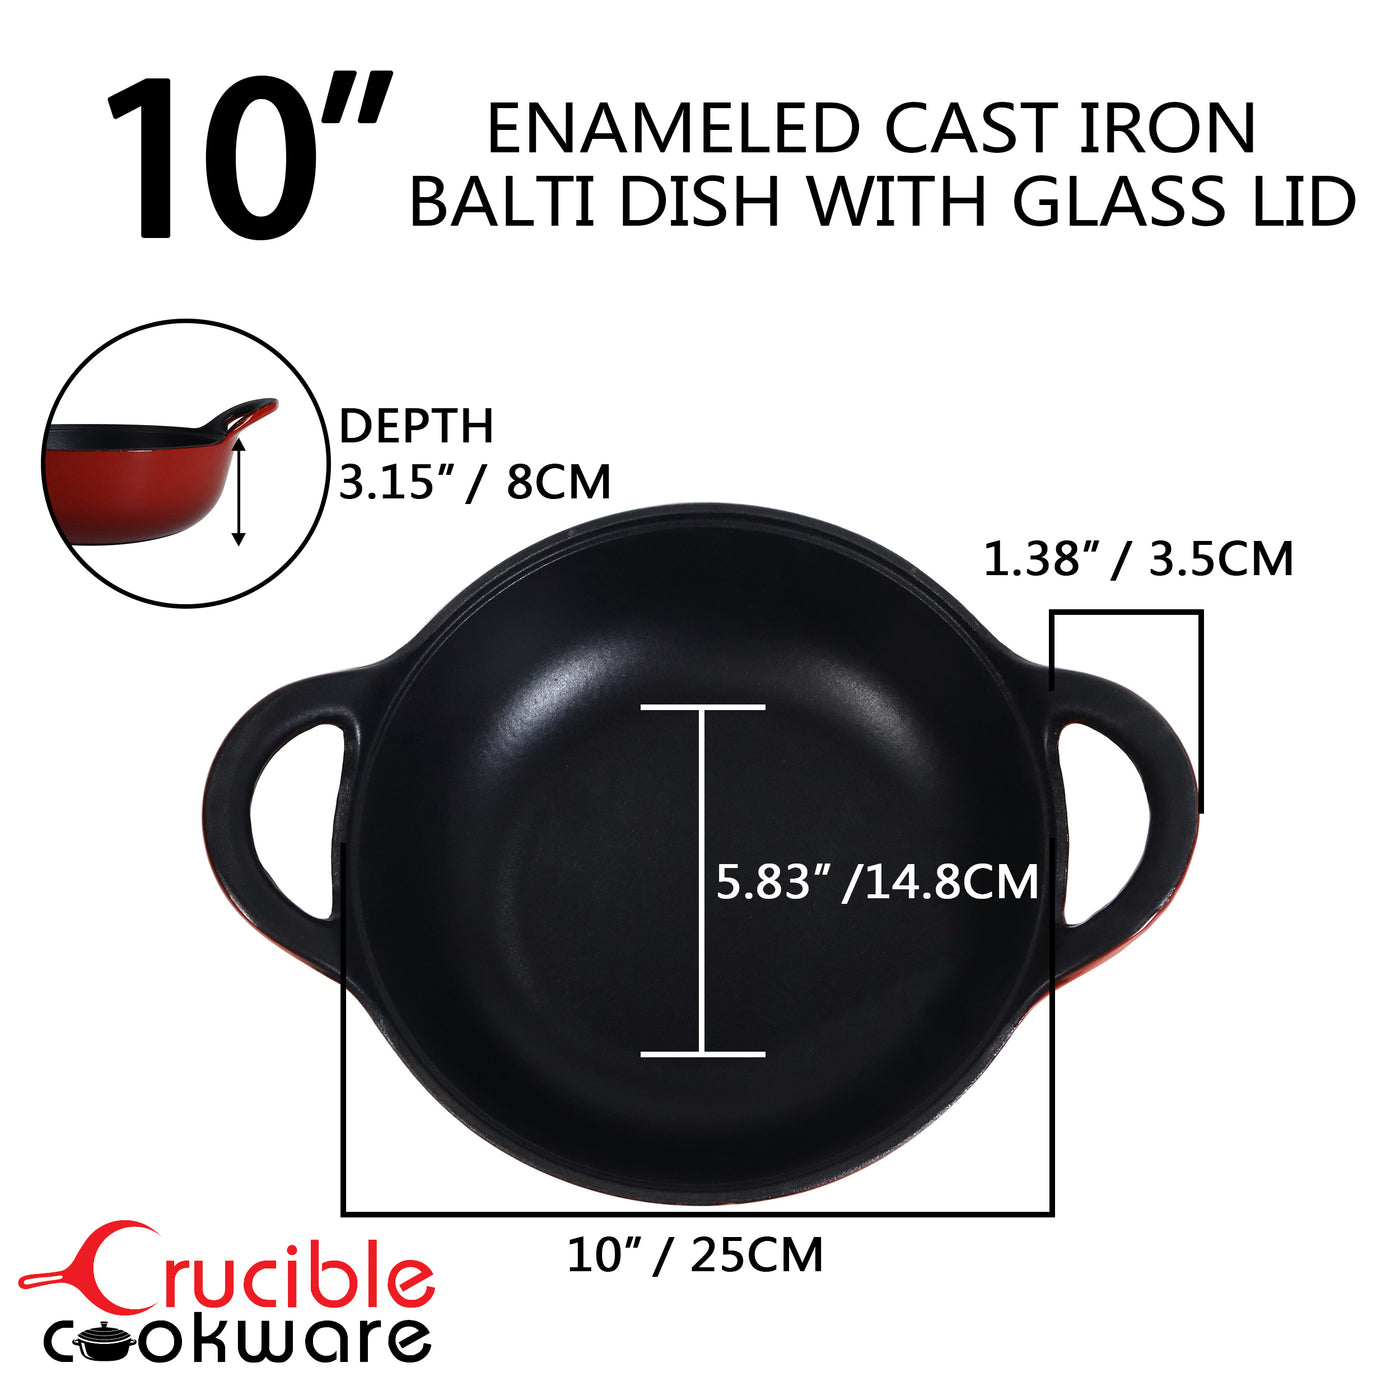 带玻璃盖的搪瓷铸铁 Balti 盘，3 夸脱中型铸铁砂锅